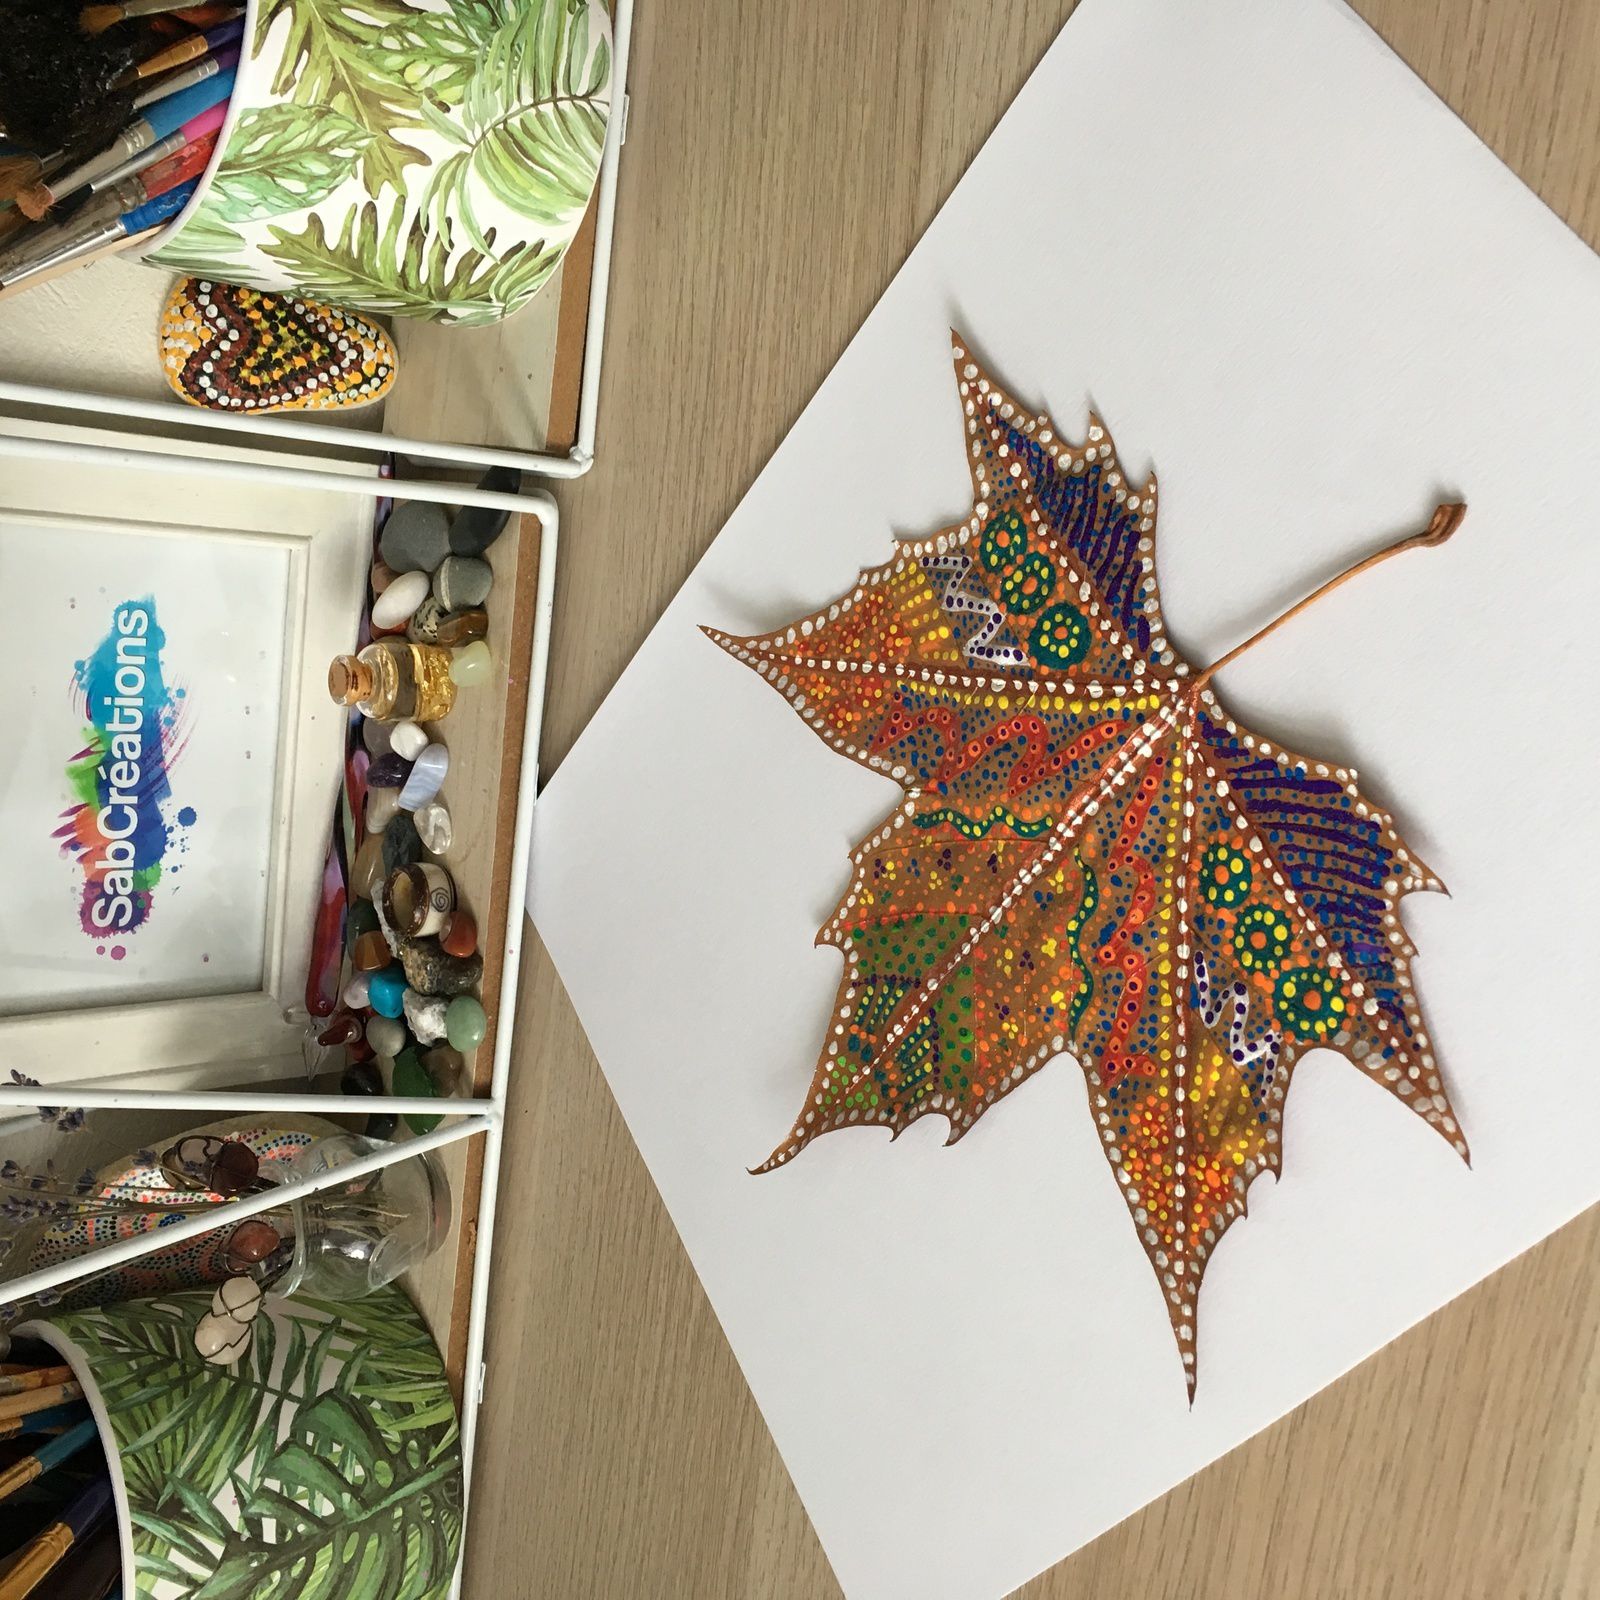 Peinture sur feuille d'arbre - DIY bricolage deco d'automne noël